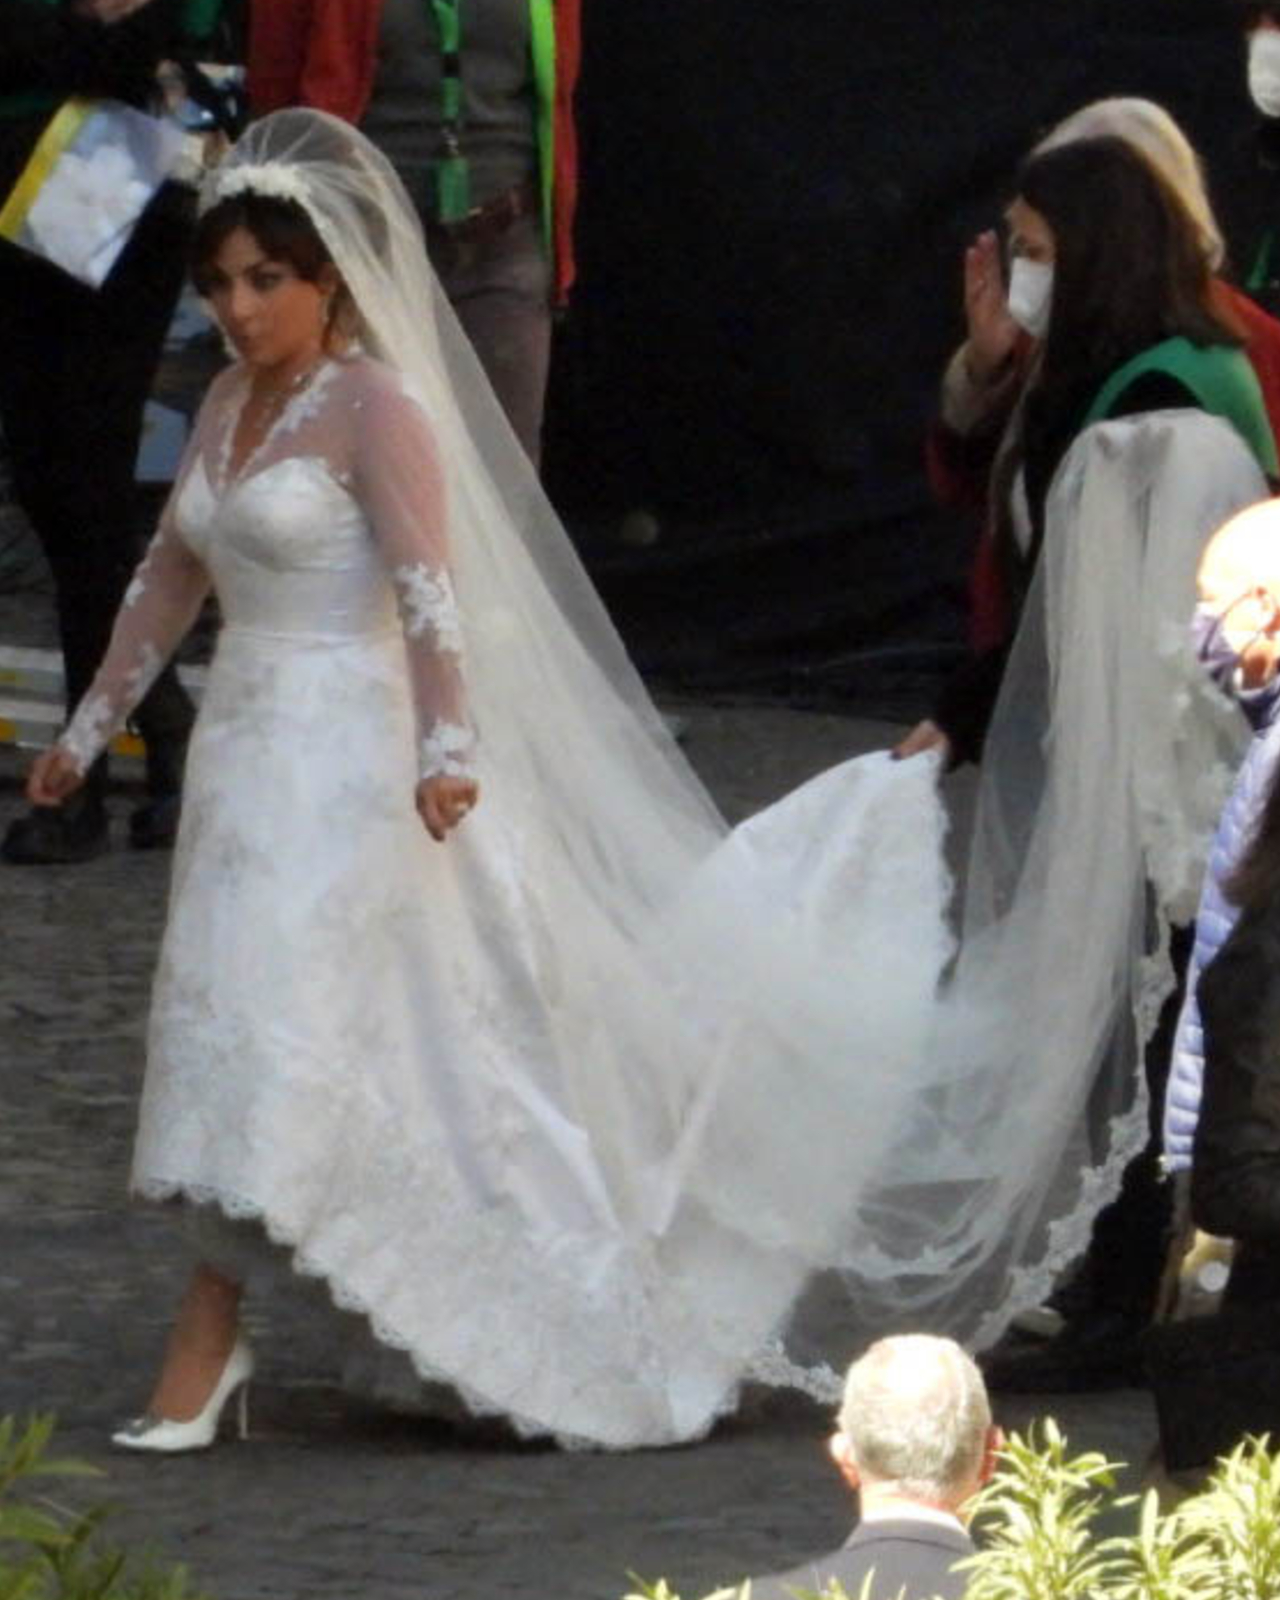 Lady Gaga wears wedding dress on 'House of Gucci' set